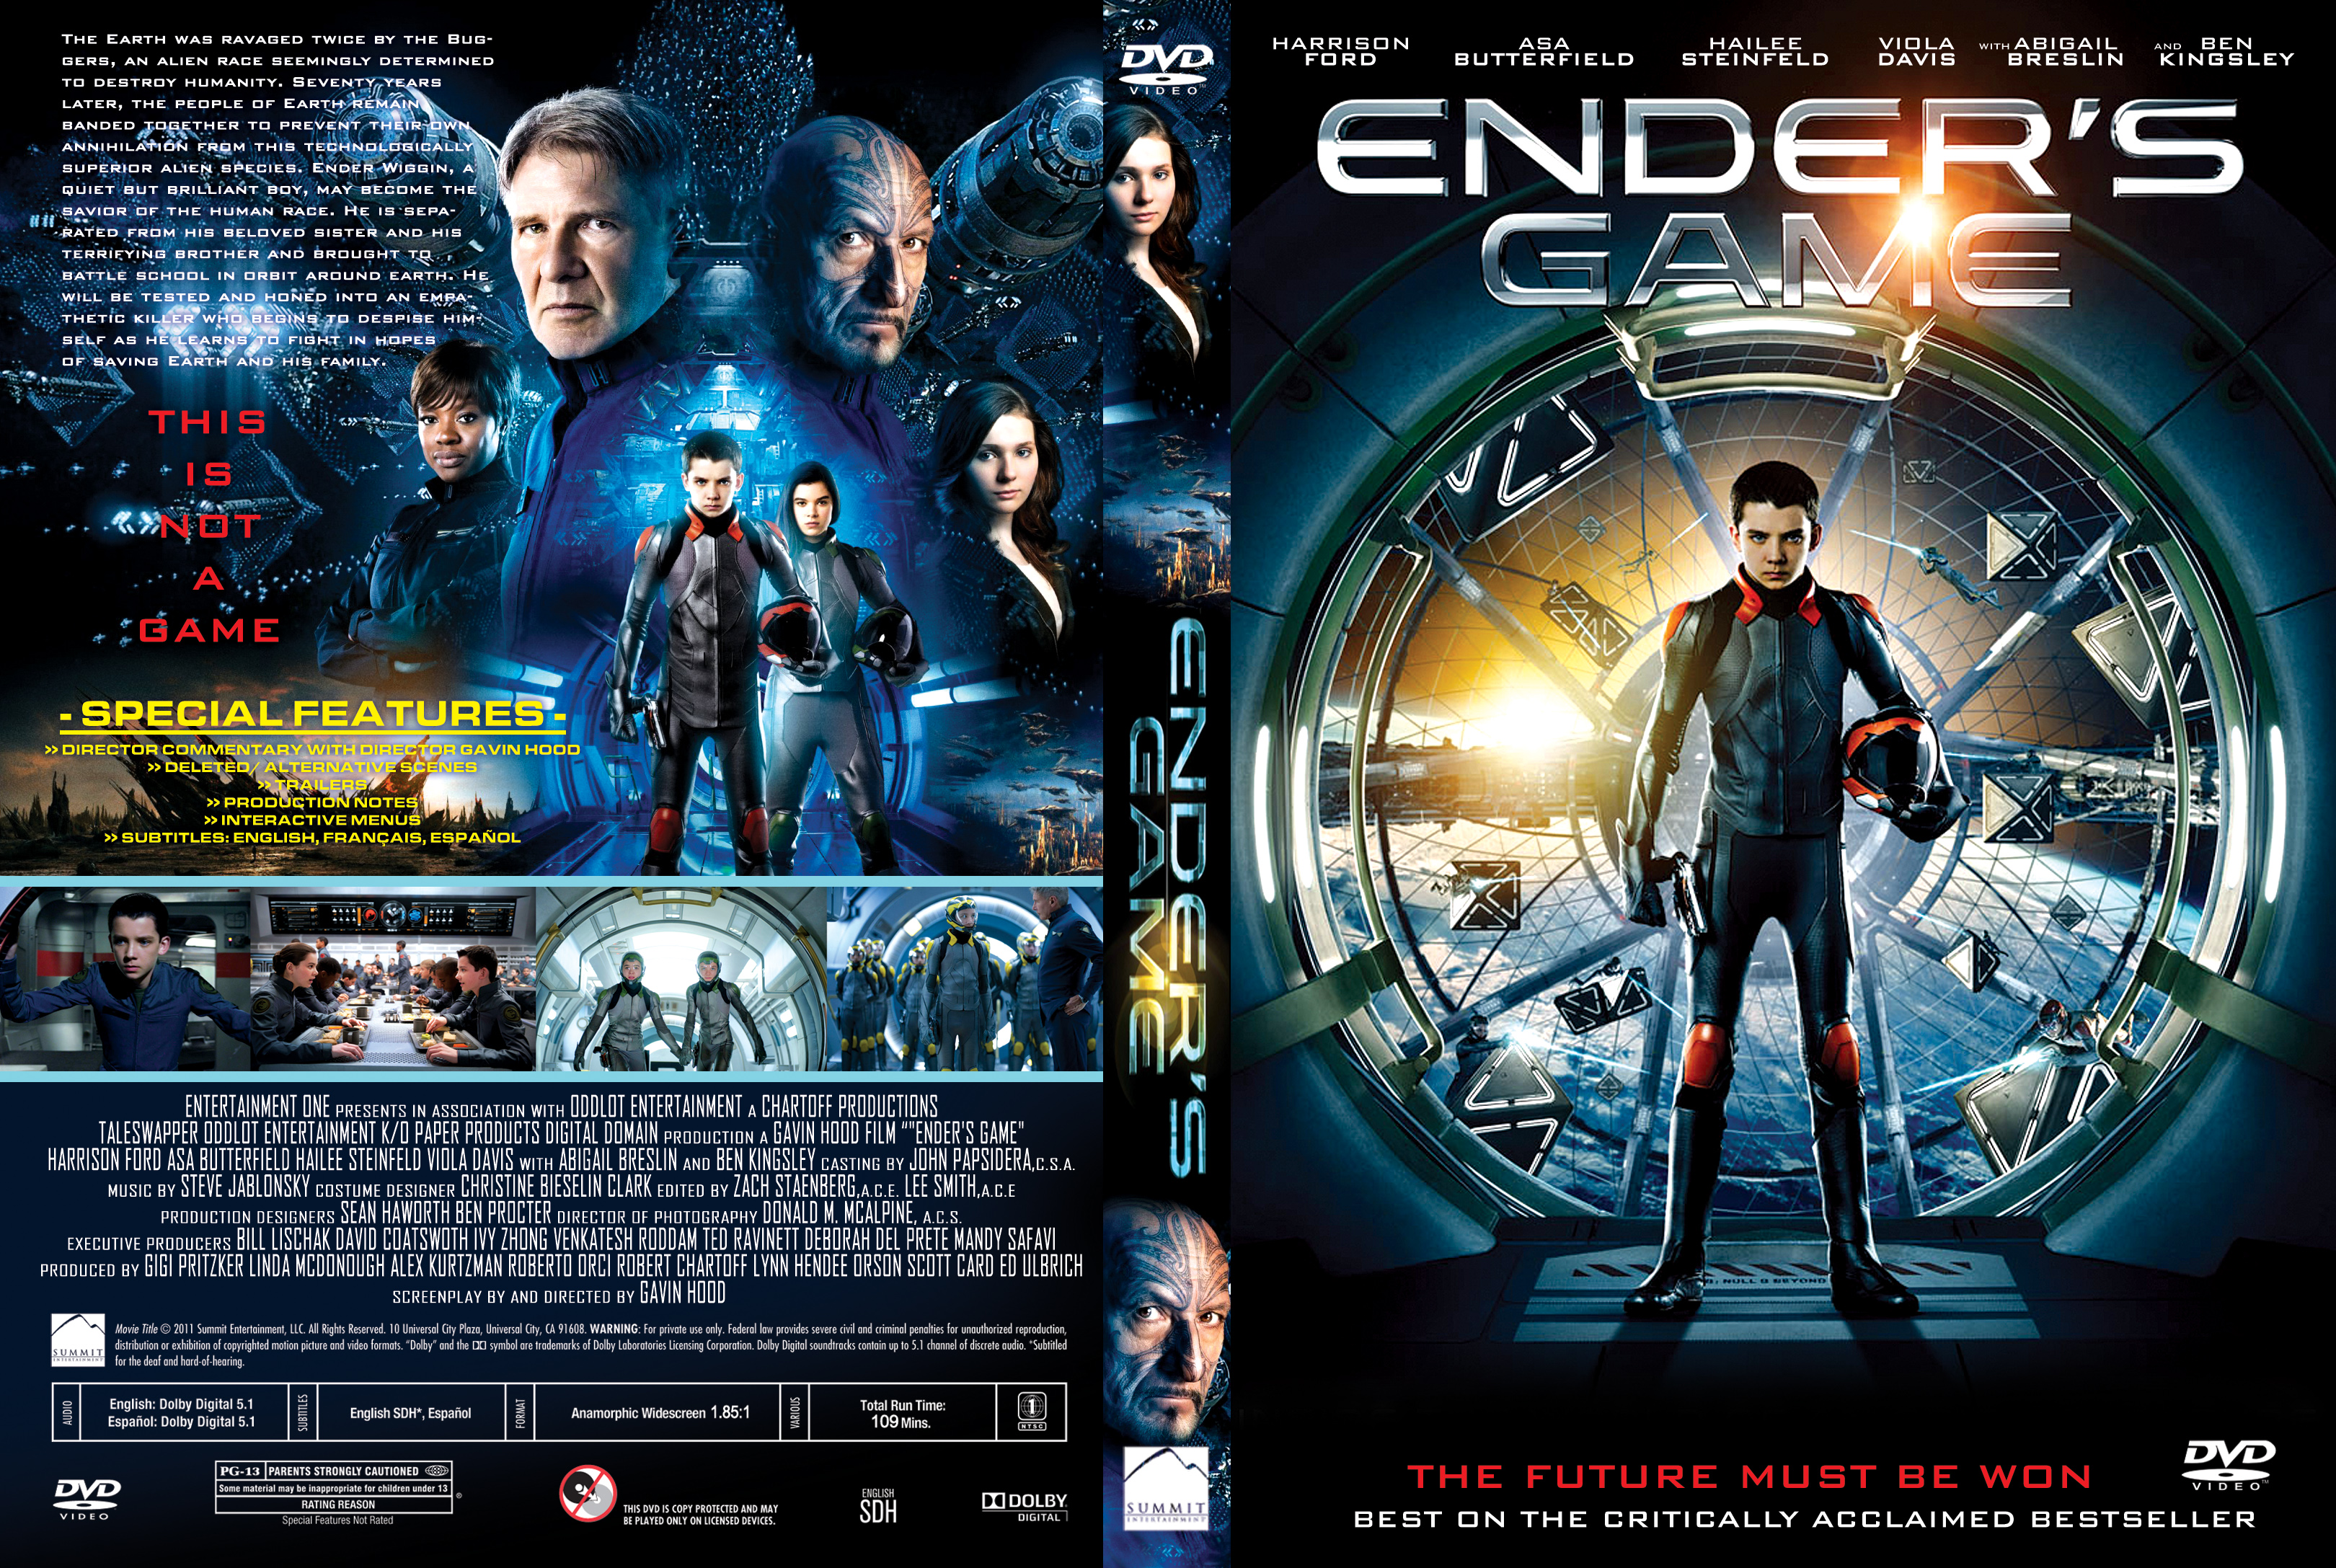 Игра эндера отзывы. Кард Орсон Скотт "игра Эндера". Игра Эндера (2013) (Ender's game)двд обложка. Игра Эндера 2013 Постер.